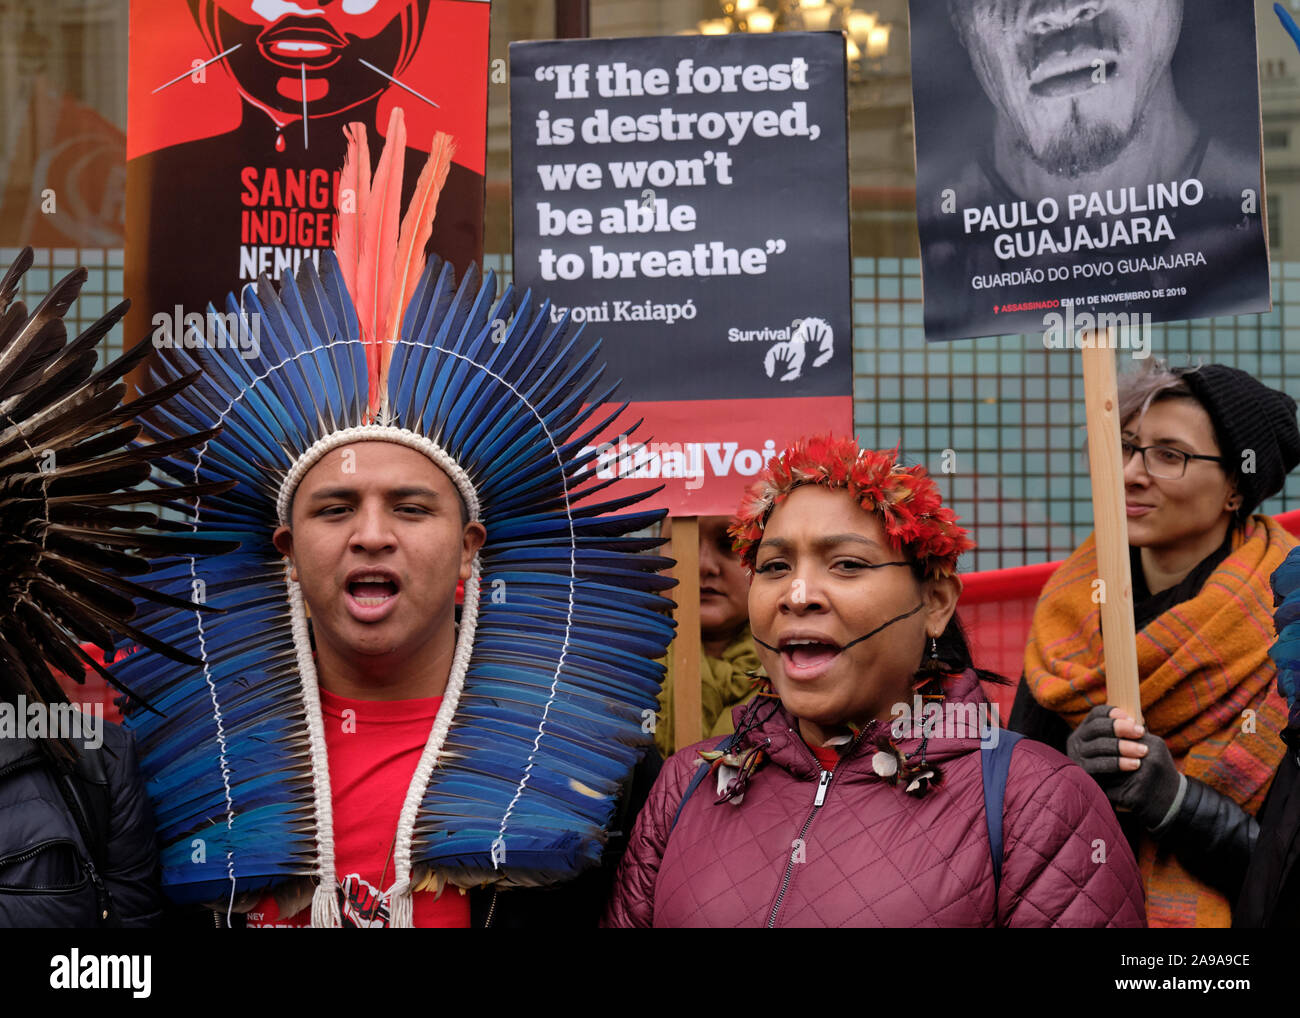 Londra, Regno Unito. 14 novembre 2019. Dieci leader indigeni provenienti da tutto il Brasile hanno protestato al di fuori dell'ambasciata brasiliana a Londra per chiedere la fine della distruzione delle loro terre e del loro popolo. I leader consegneranno all'ambasciata il premio razzista dell'anno, quest'anno vinto dal presidente Bolsonaro. I leader indigeni si trovano a Londra come parte del tour di advocacy "sangue indigeno: Non una goccia di più". Chiedono ai cittadini europei di boicottare l'agroalimentare brasiliana fino al rispetto dei loro diritti. Credito: Alamy Live News Foto Stock